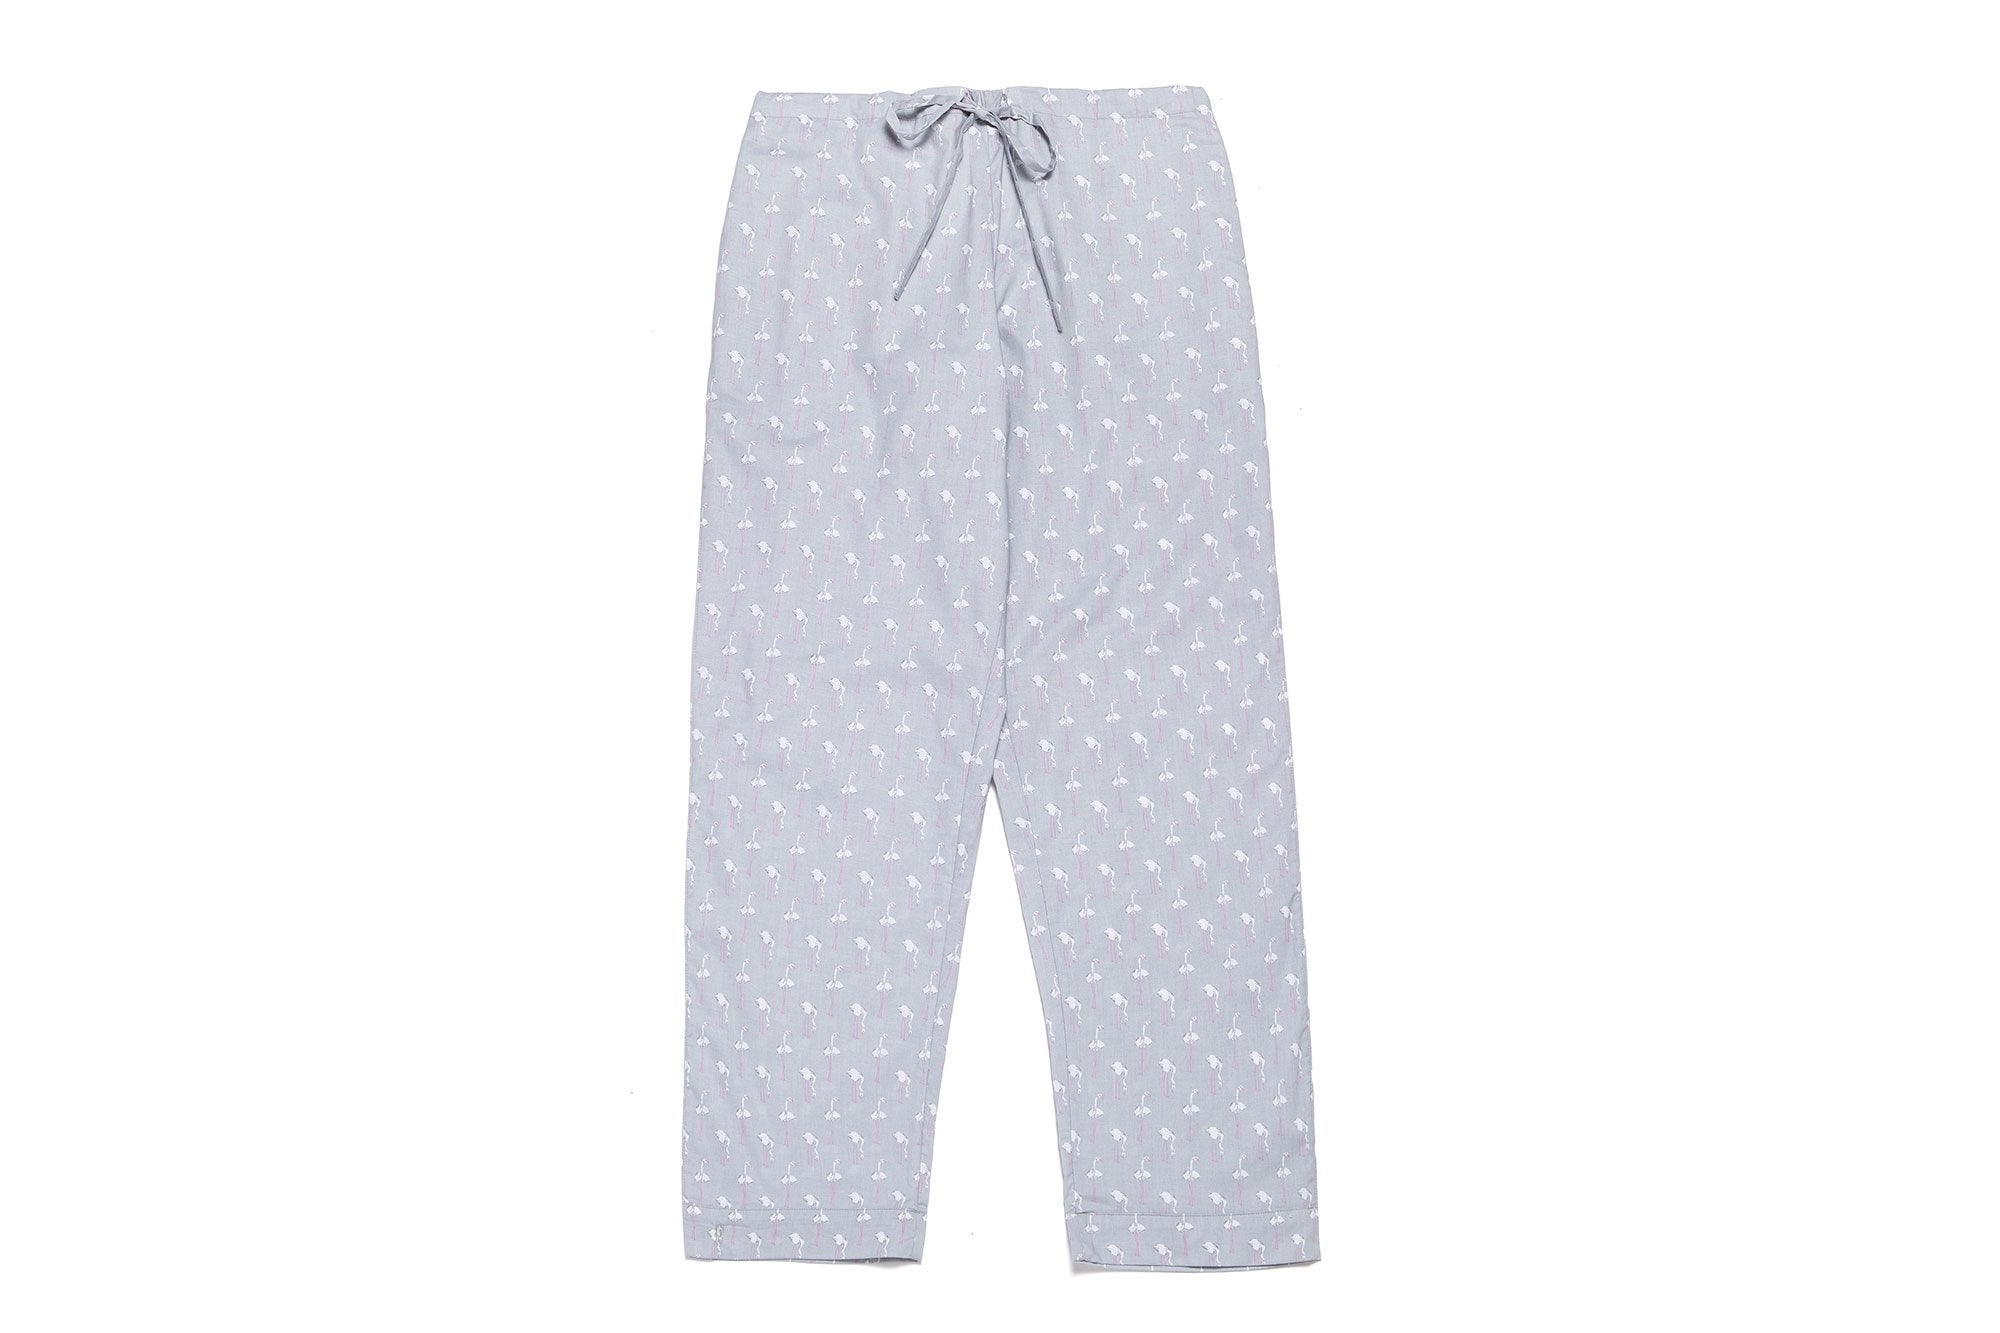 Lorient Block Print Long Pajama Set | Marigot Collection